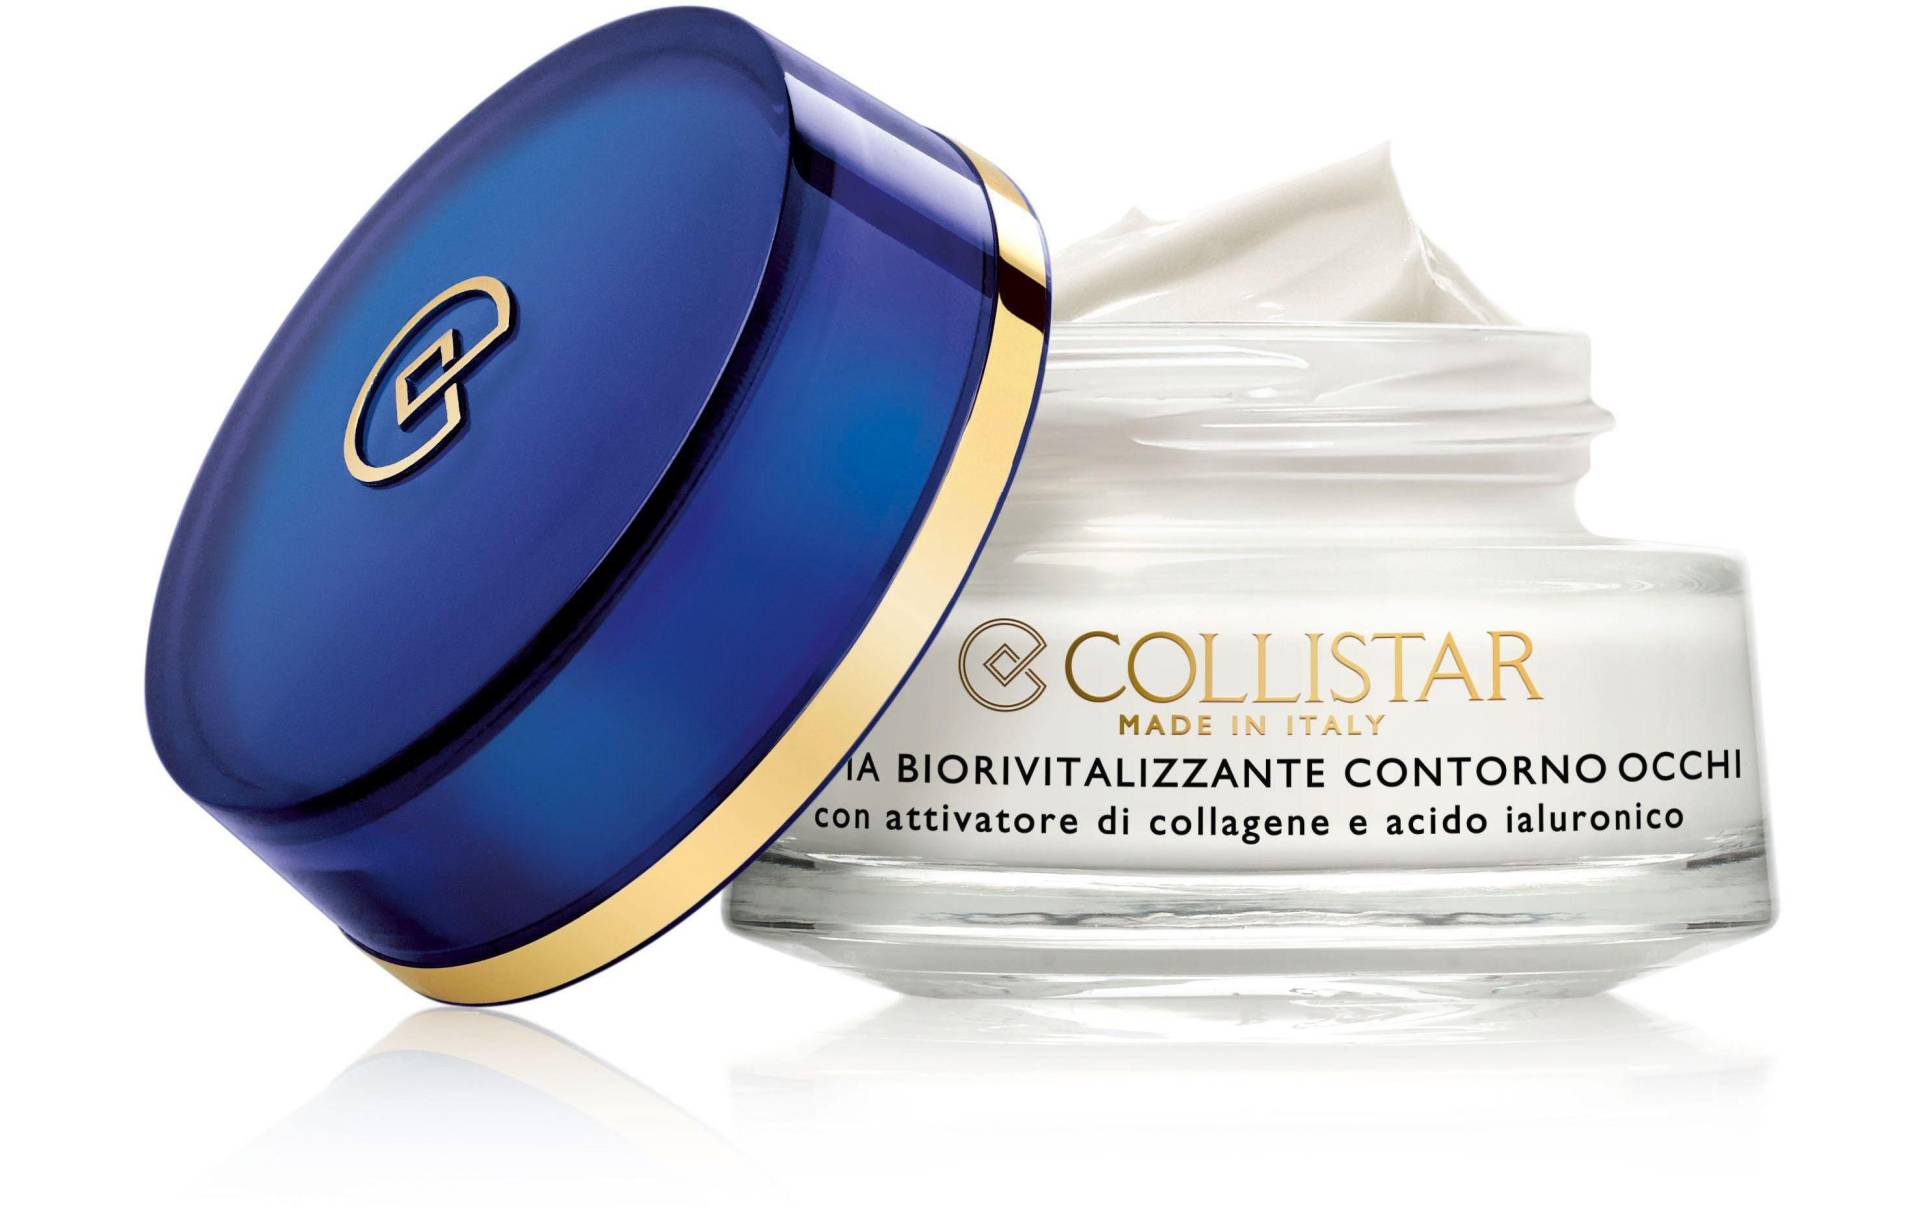 COLLISTAR Augencreme »Biorevitalizing Eye Contour Cream 15 ml« von COLLISTAR